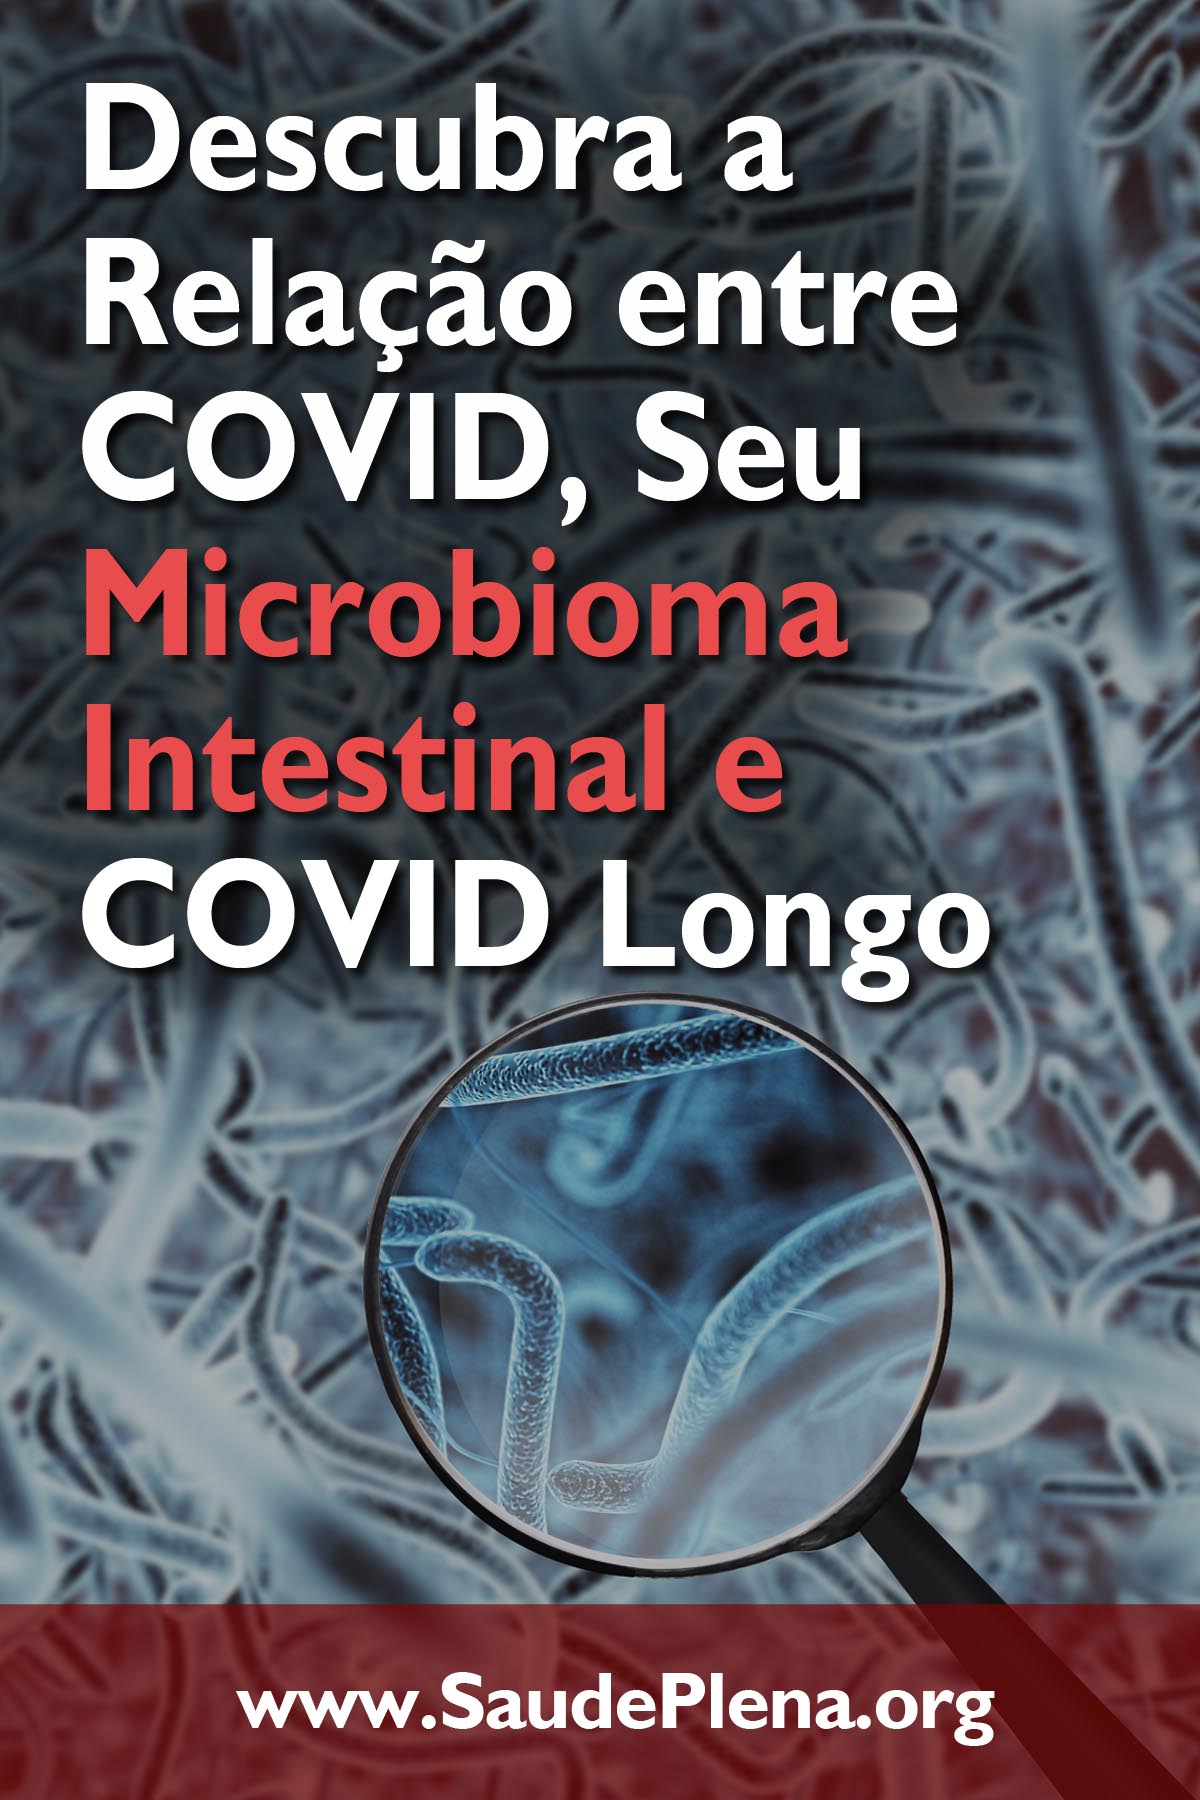 Descubra a Relação entre COVID, Seu Microbioma Intestinal e COVID Longo